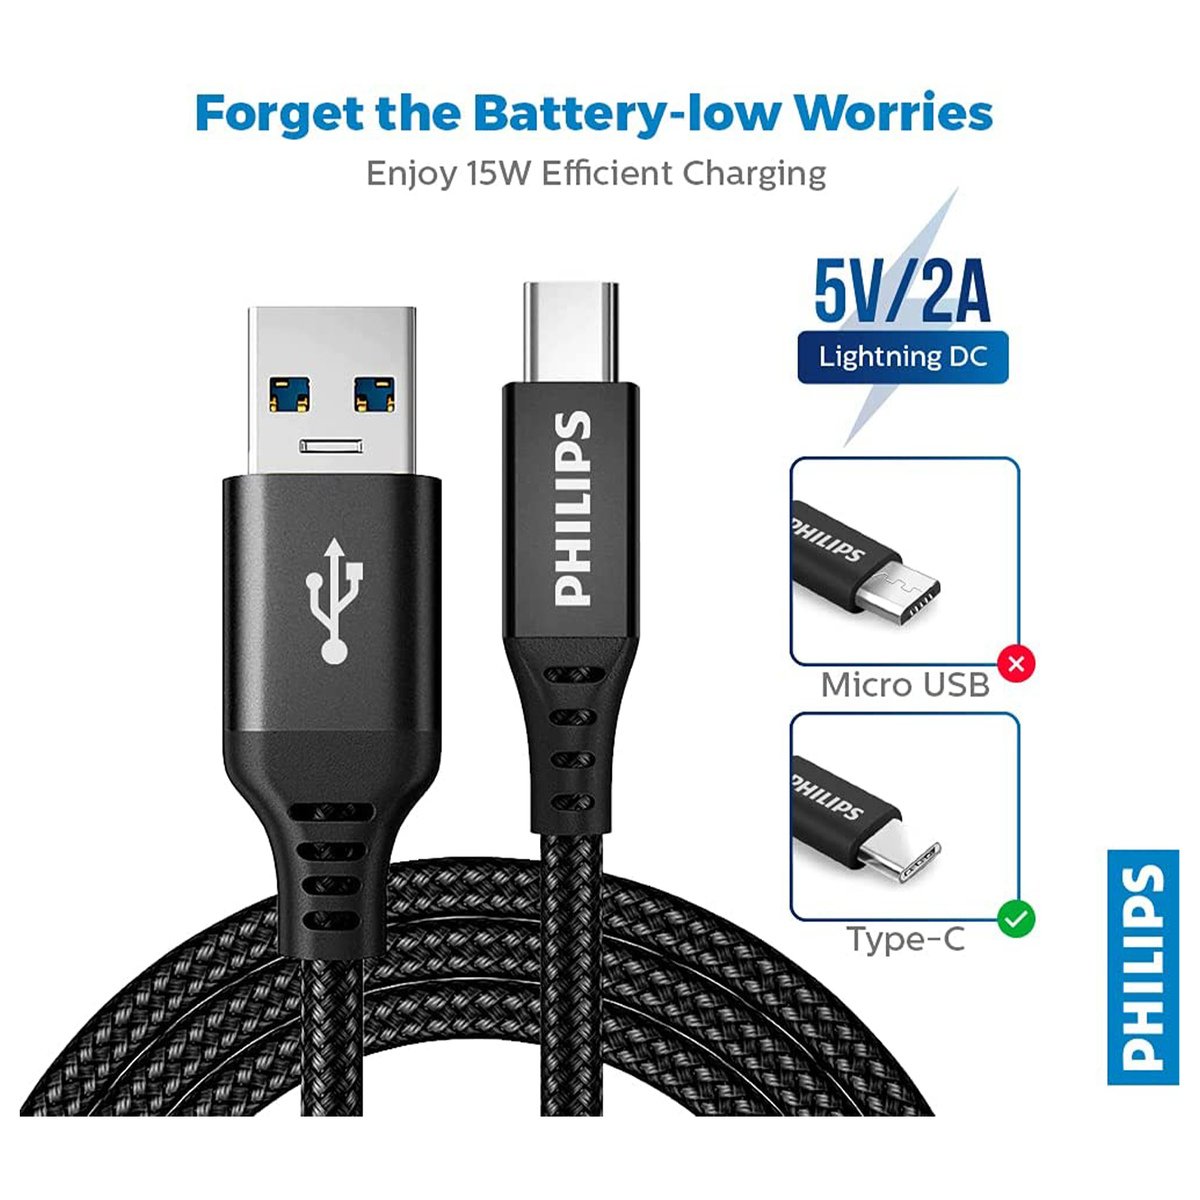 USB to Micro USB cable DLC3104U/00